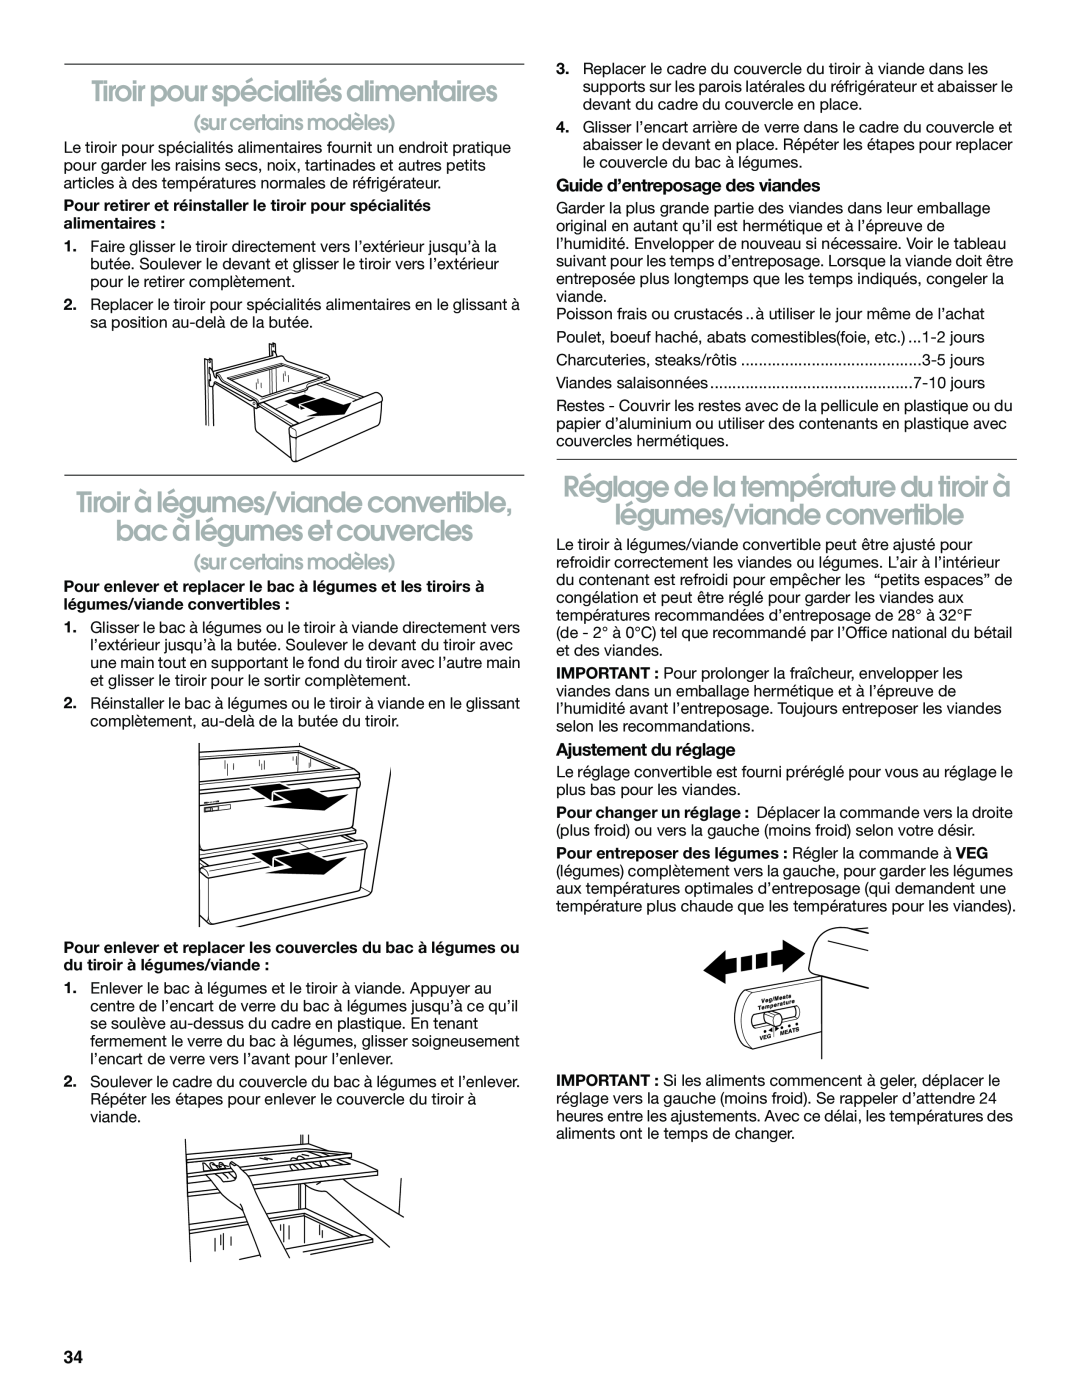 Whirlpool RS22AQXGN03 manual Tiroir pour spécialités alimentaires, sur certains modèles, Guide d’entreposage des viandes 